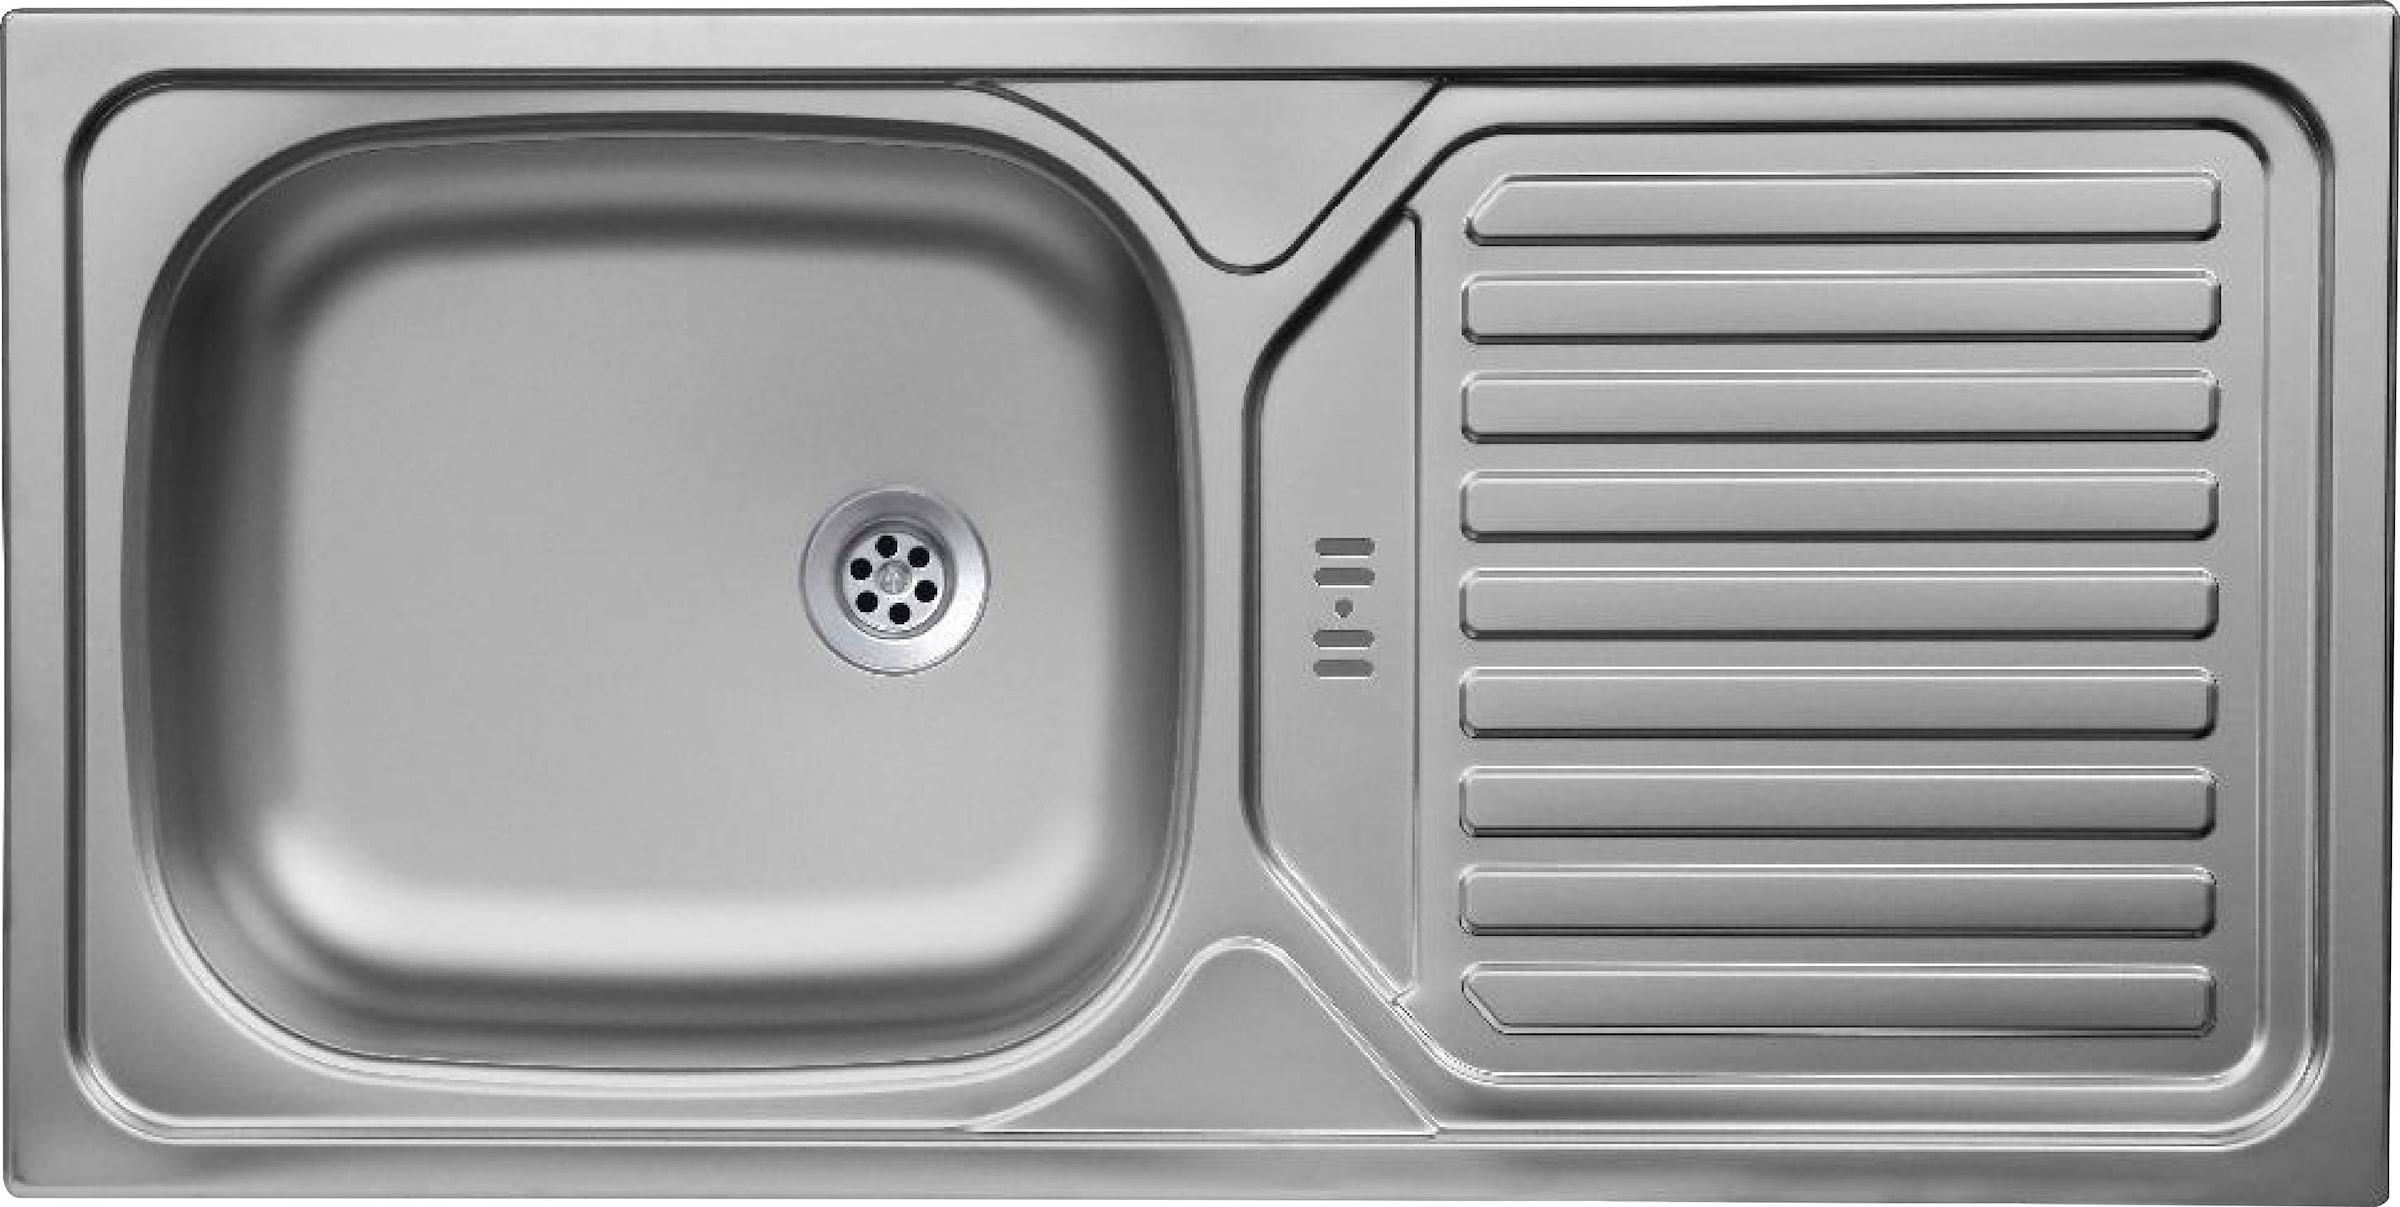 Flex-Well Küche »Cara«, mit und ohne E-Geräten erhältlich, Gesamtbreite 270 cm